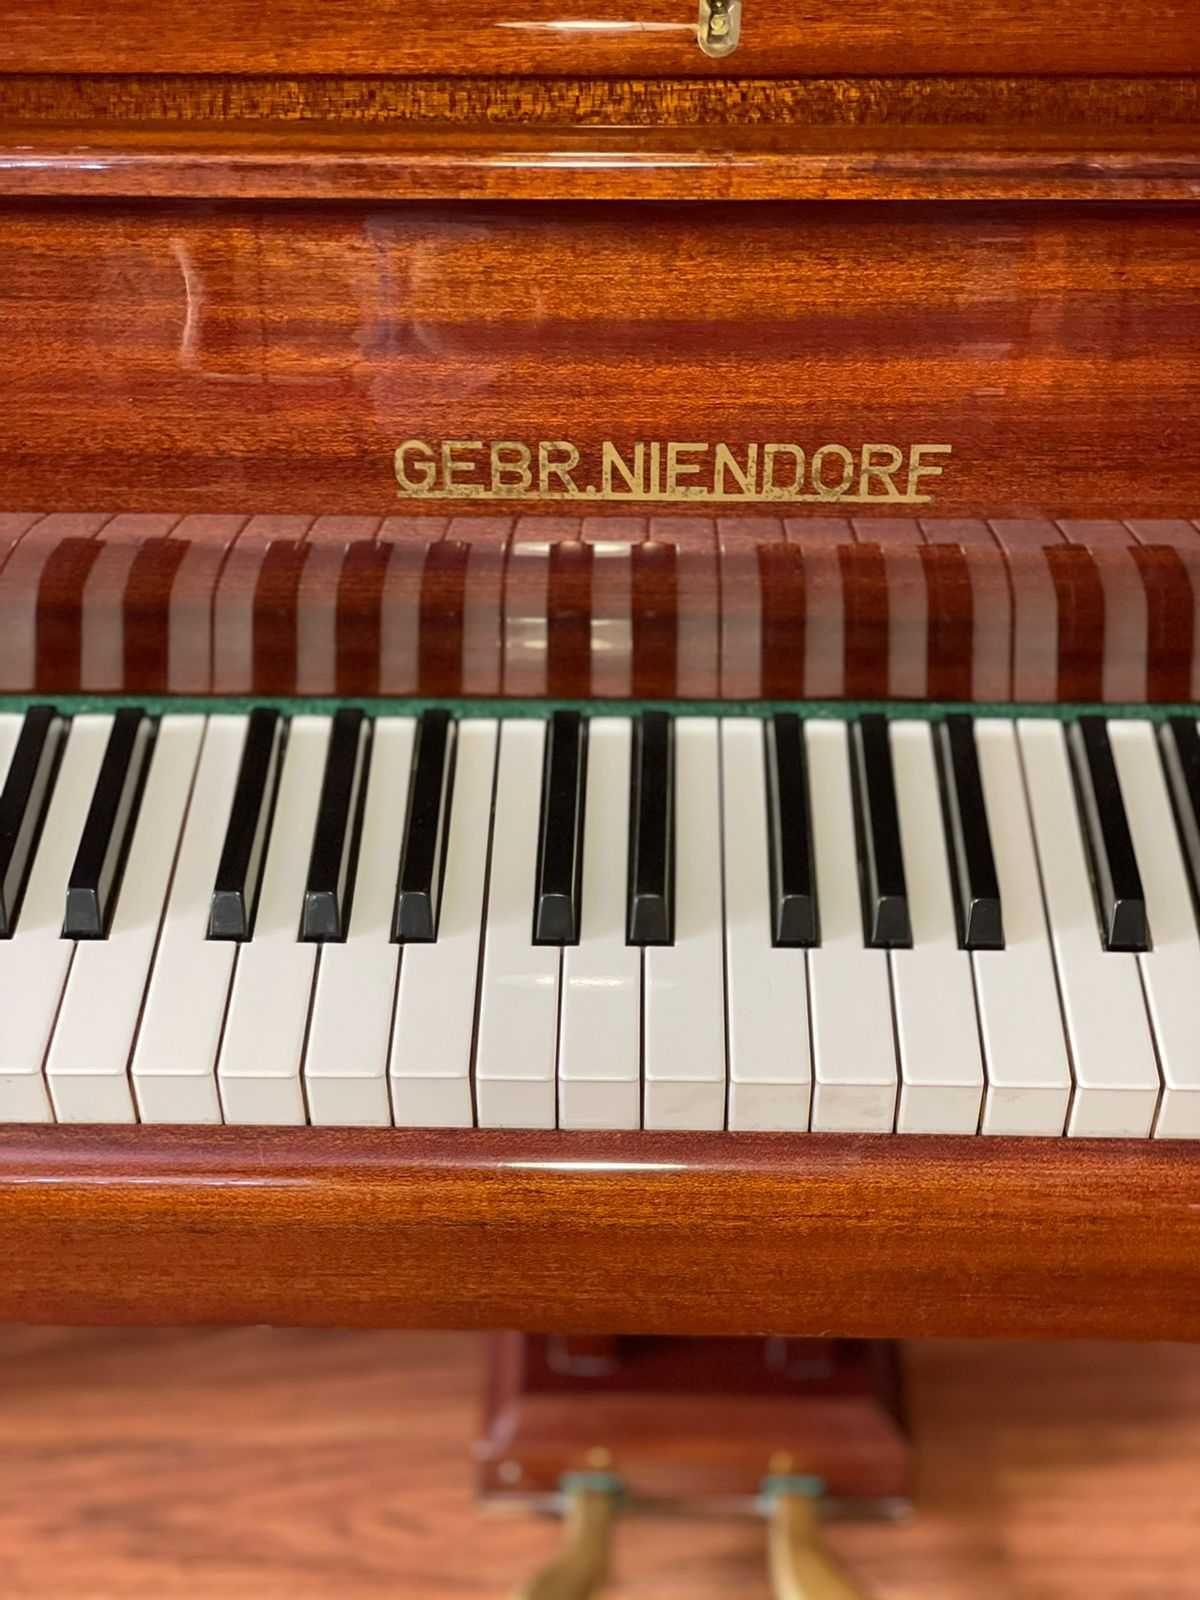 Рояль «Gebr.niendorf» в прекрасном состоянии